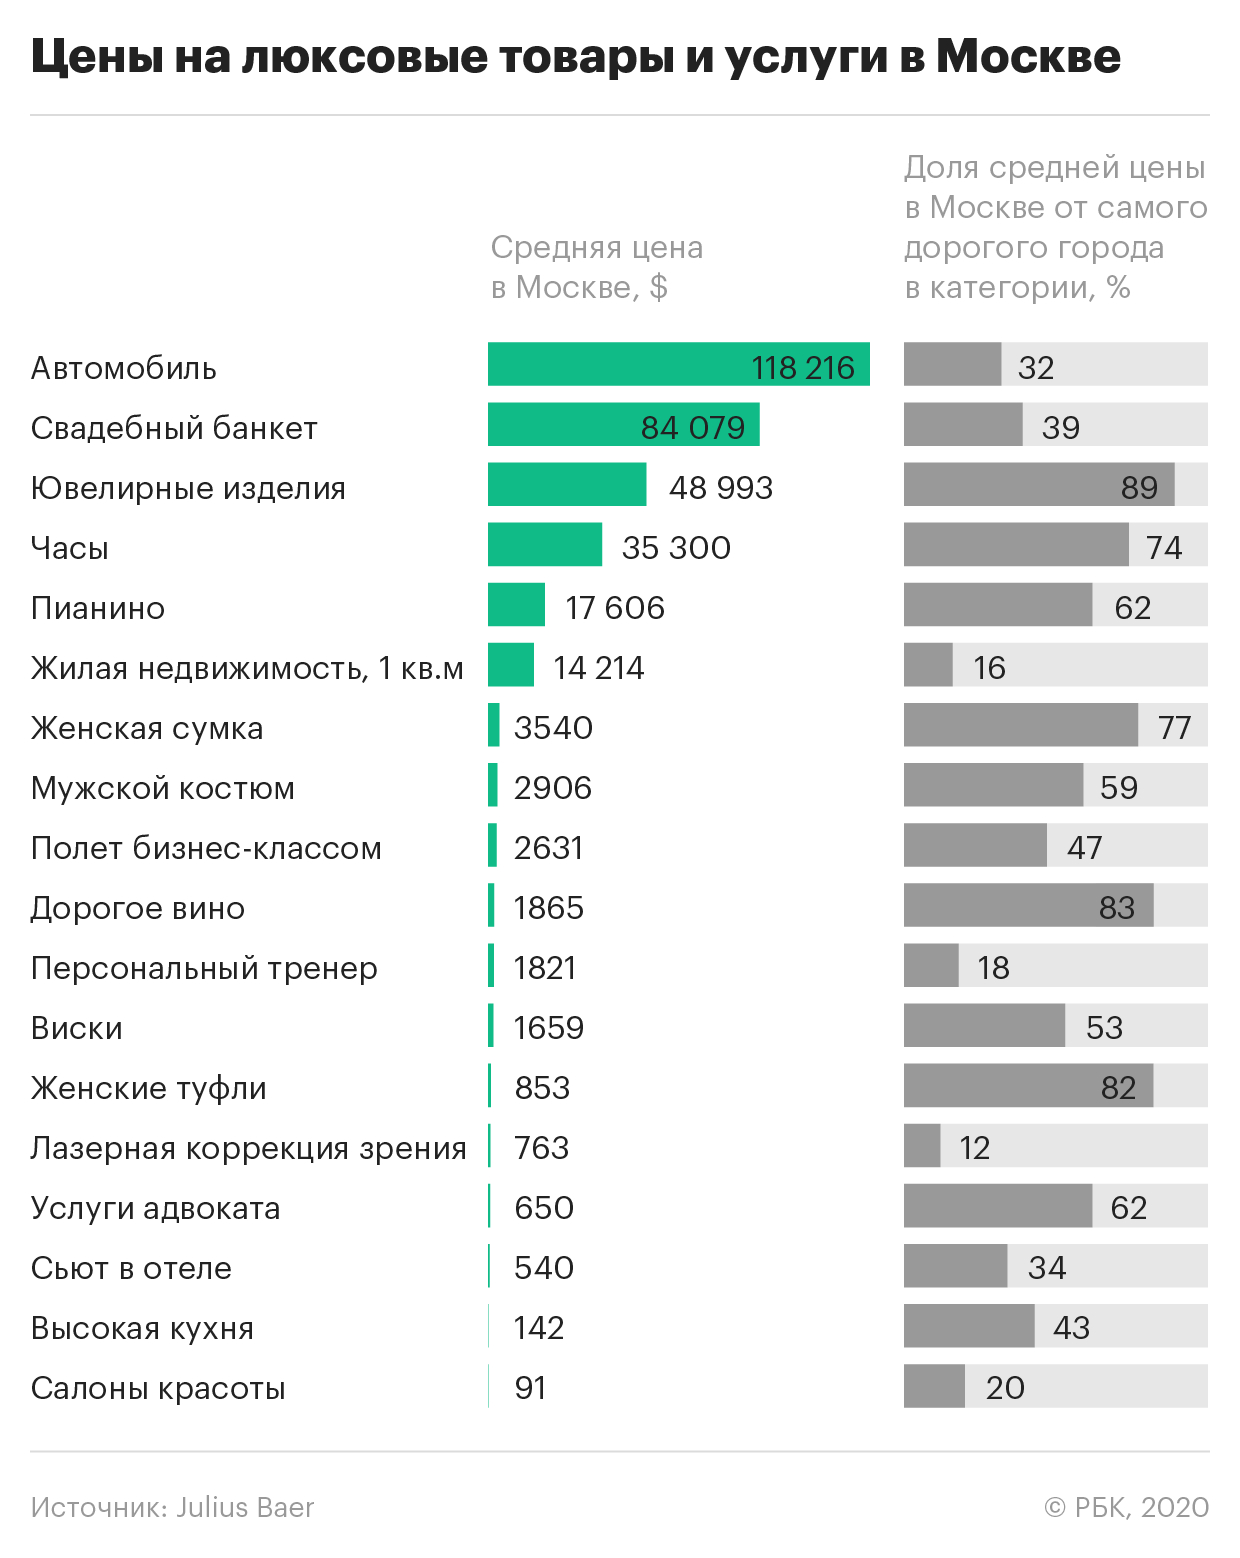 Москва вошла в число самых доступных для миллионеров городов мира